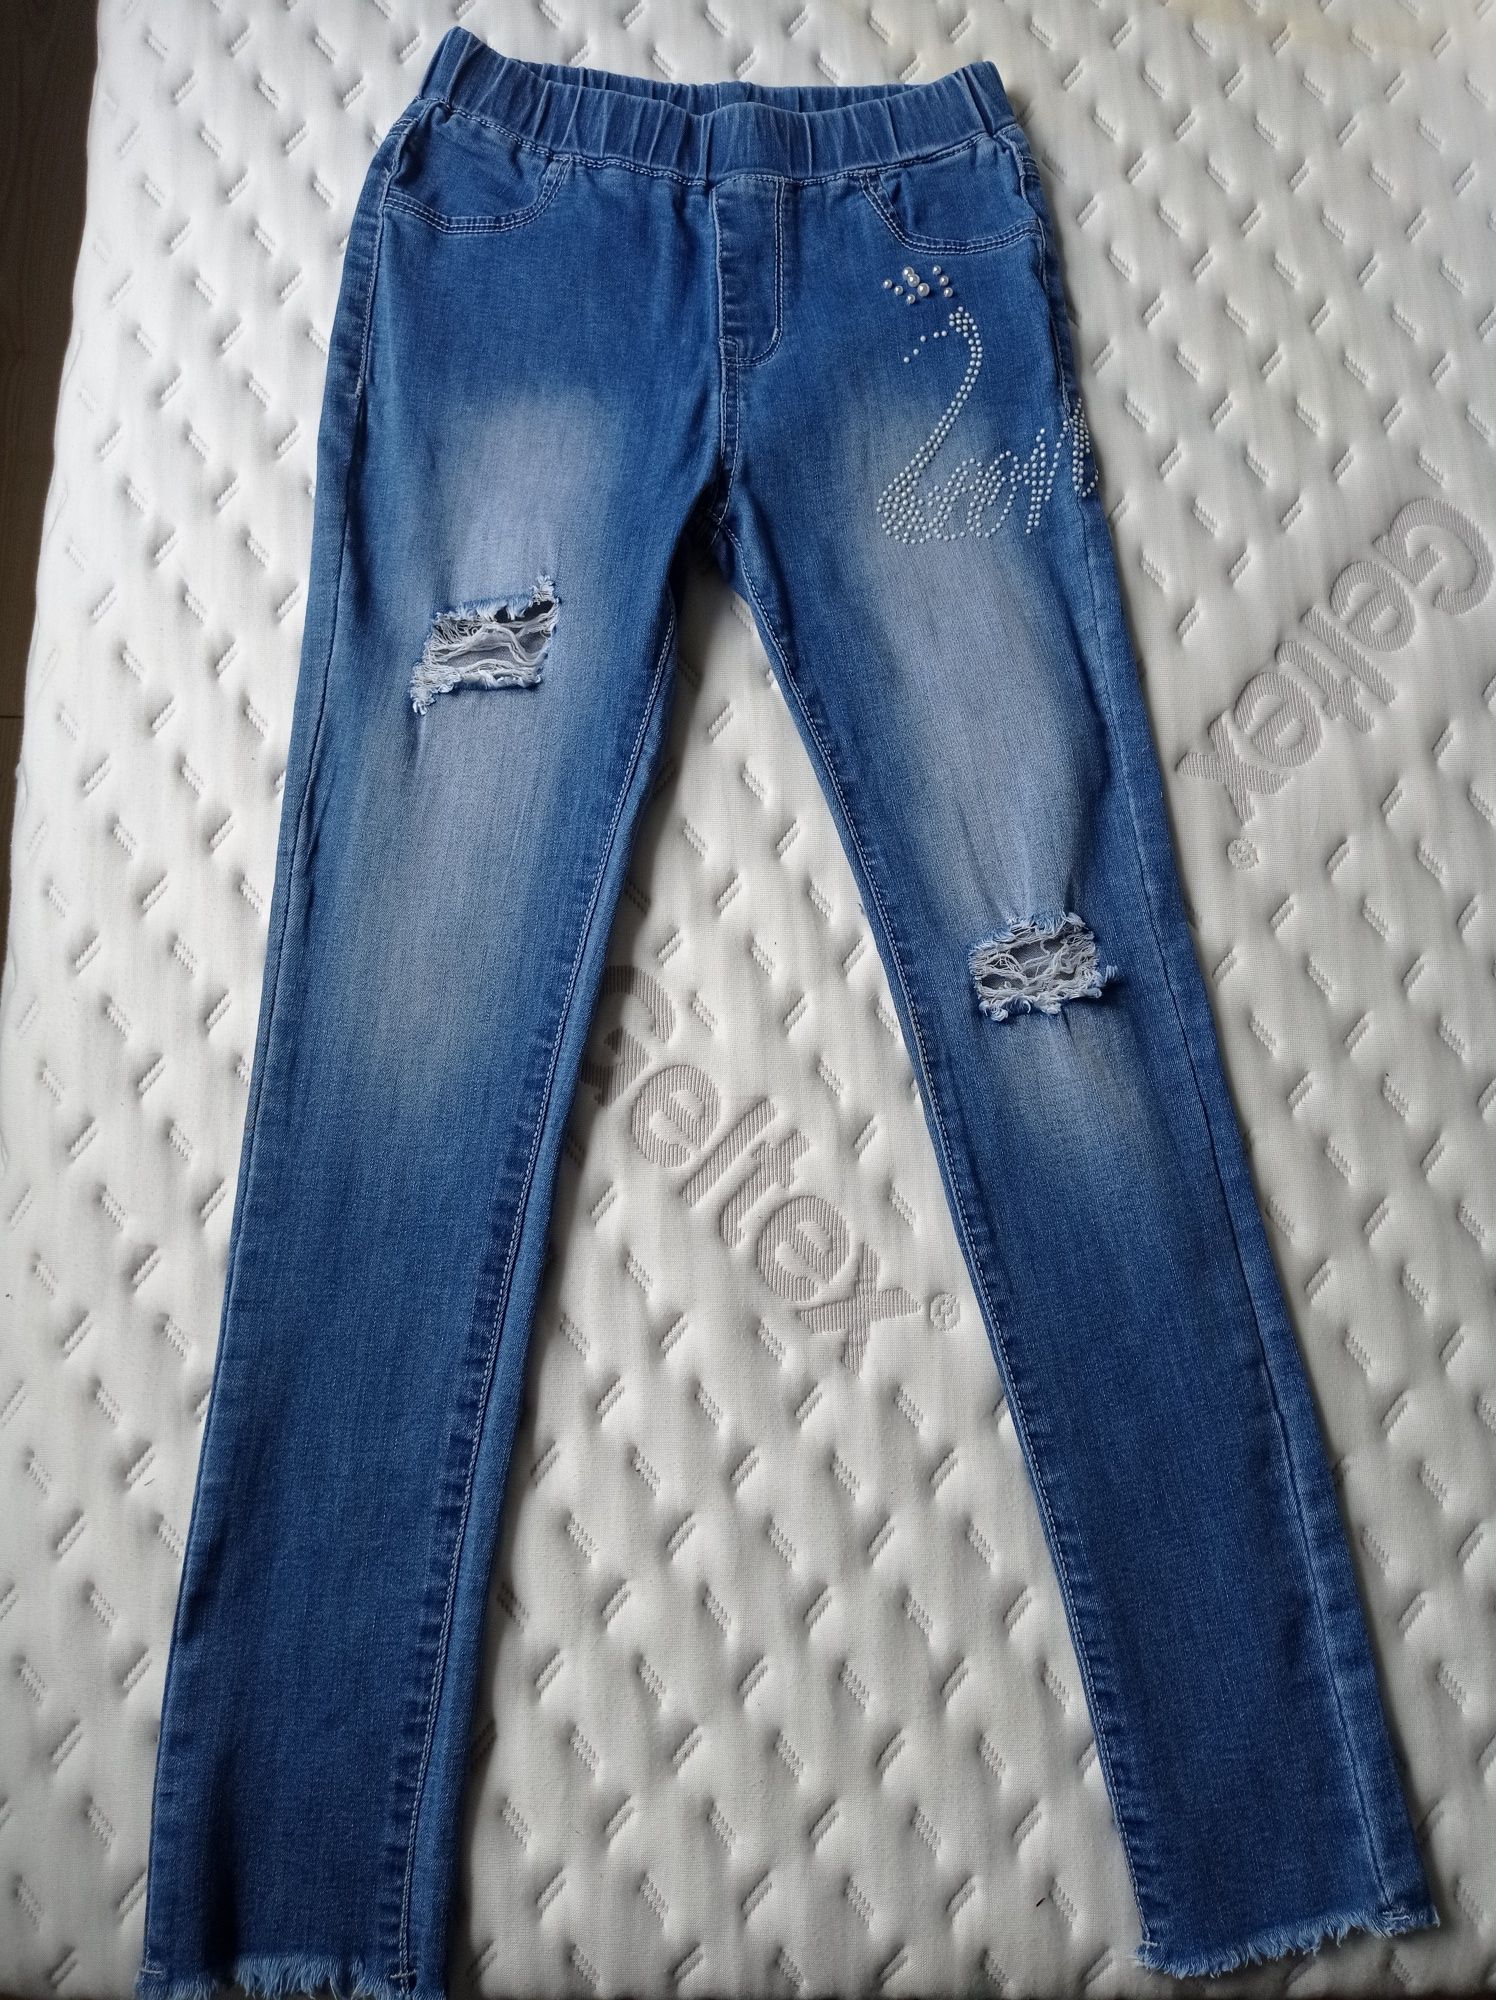 Spodnie legginsy jeansowe rozmiar 146-152 cm